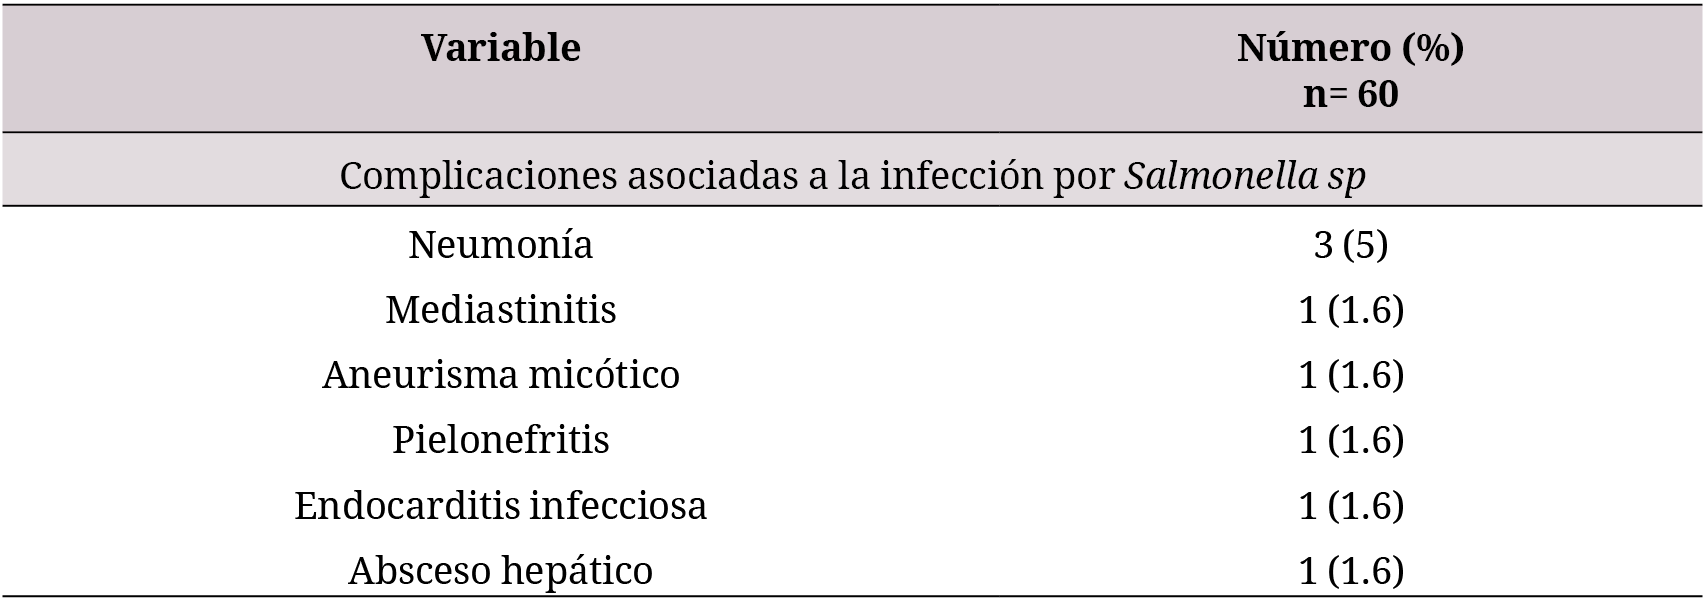 Complicaciones de las infecciones asociadas a Salmonella SP
